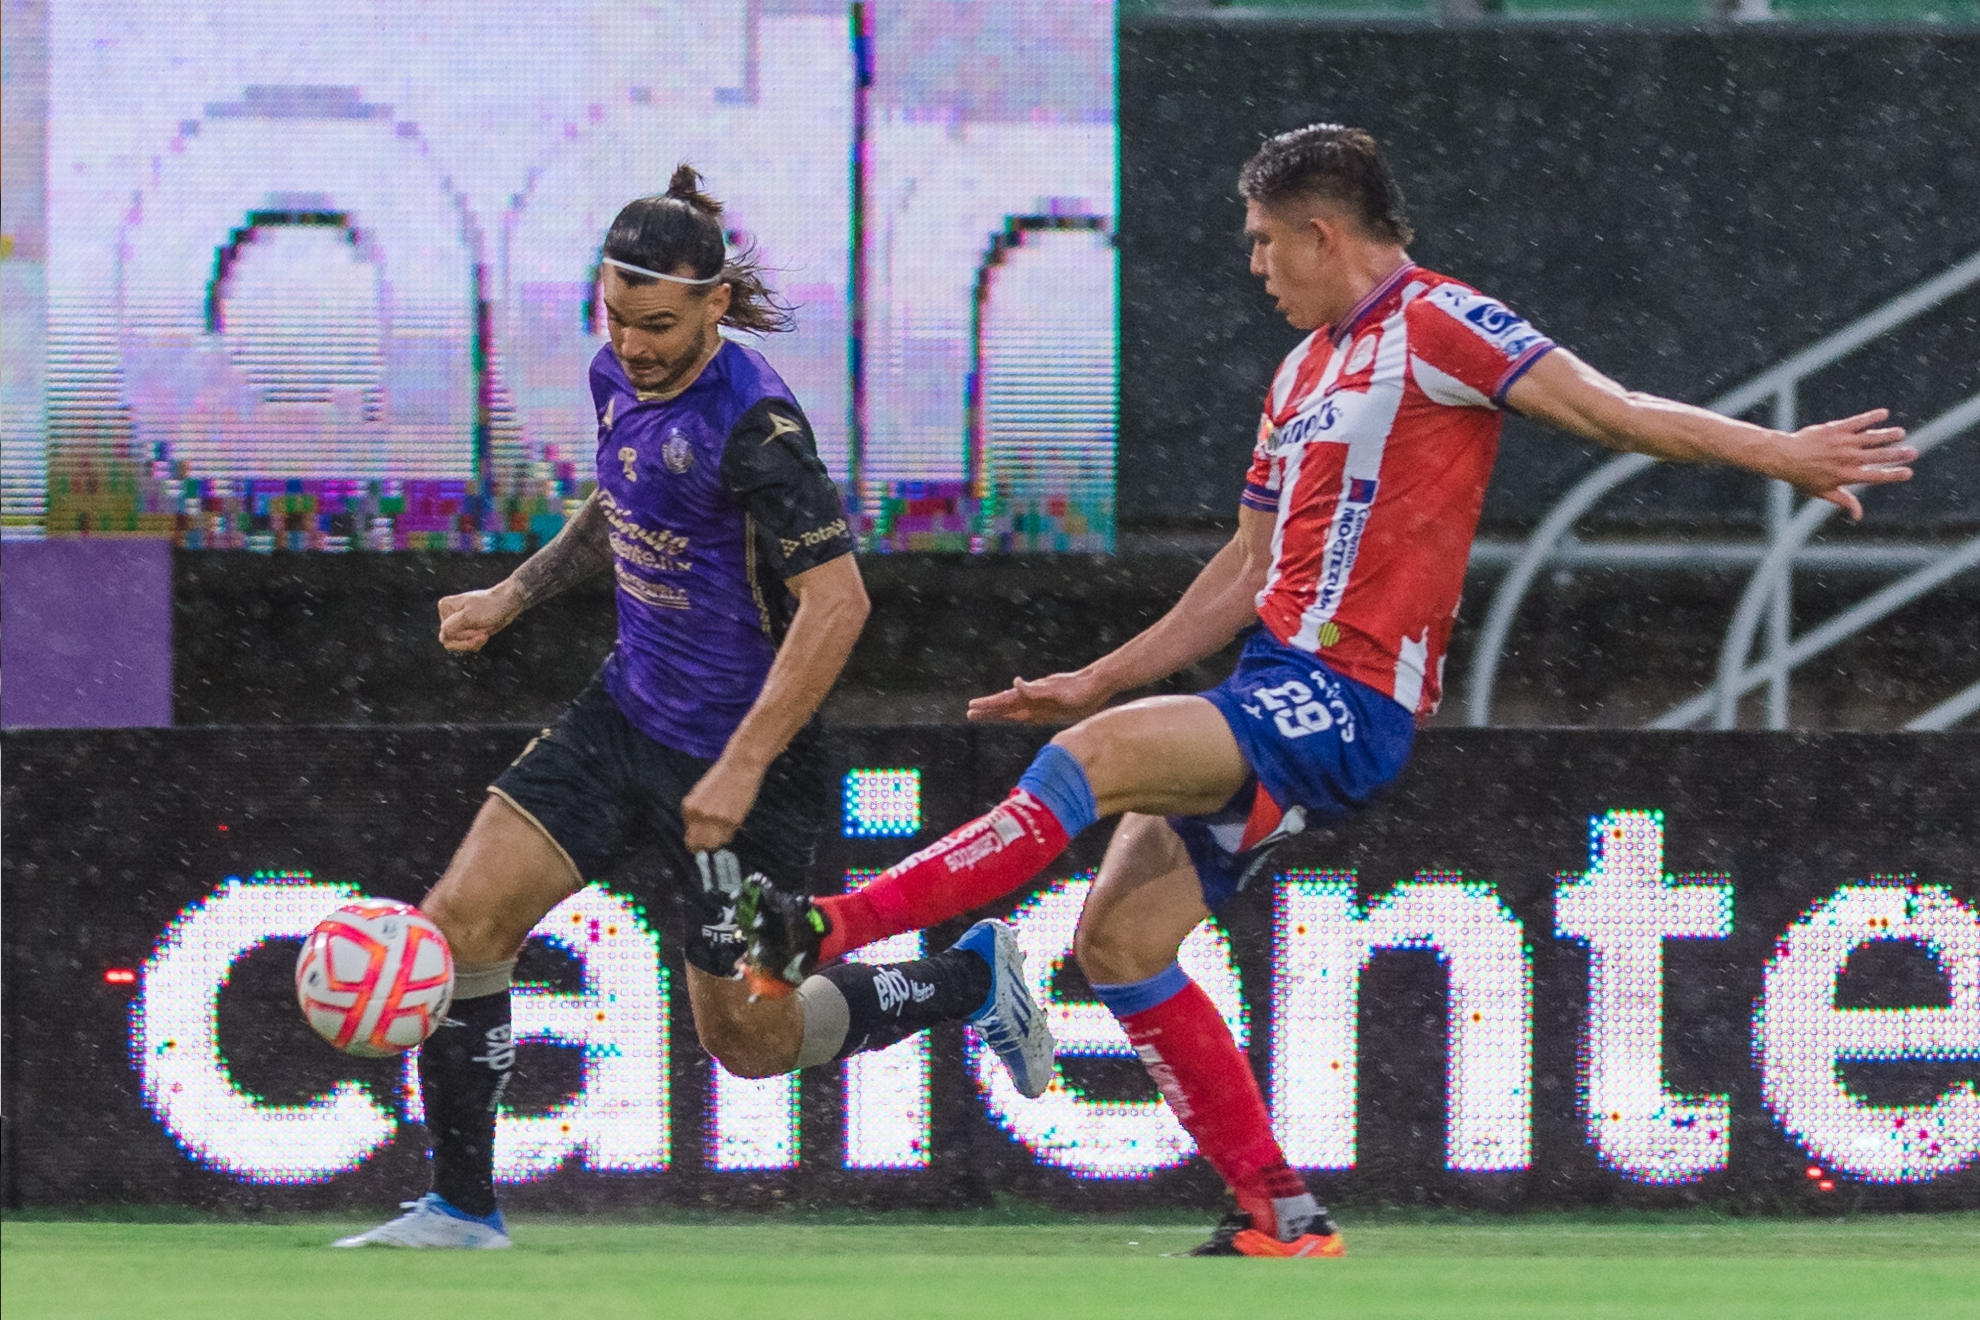 La ltima vez que caoneros y potosinos se enfrentaron empataron 1-1 en el Apertura 2022.